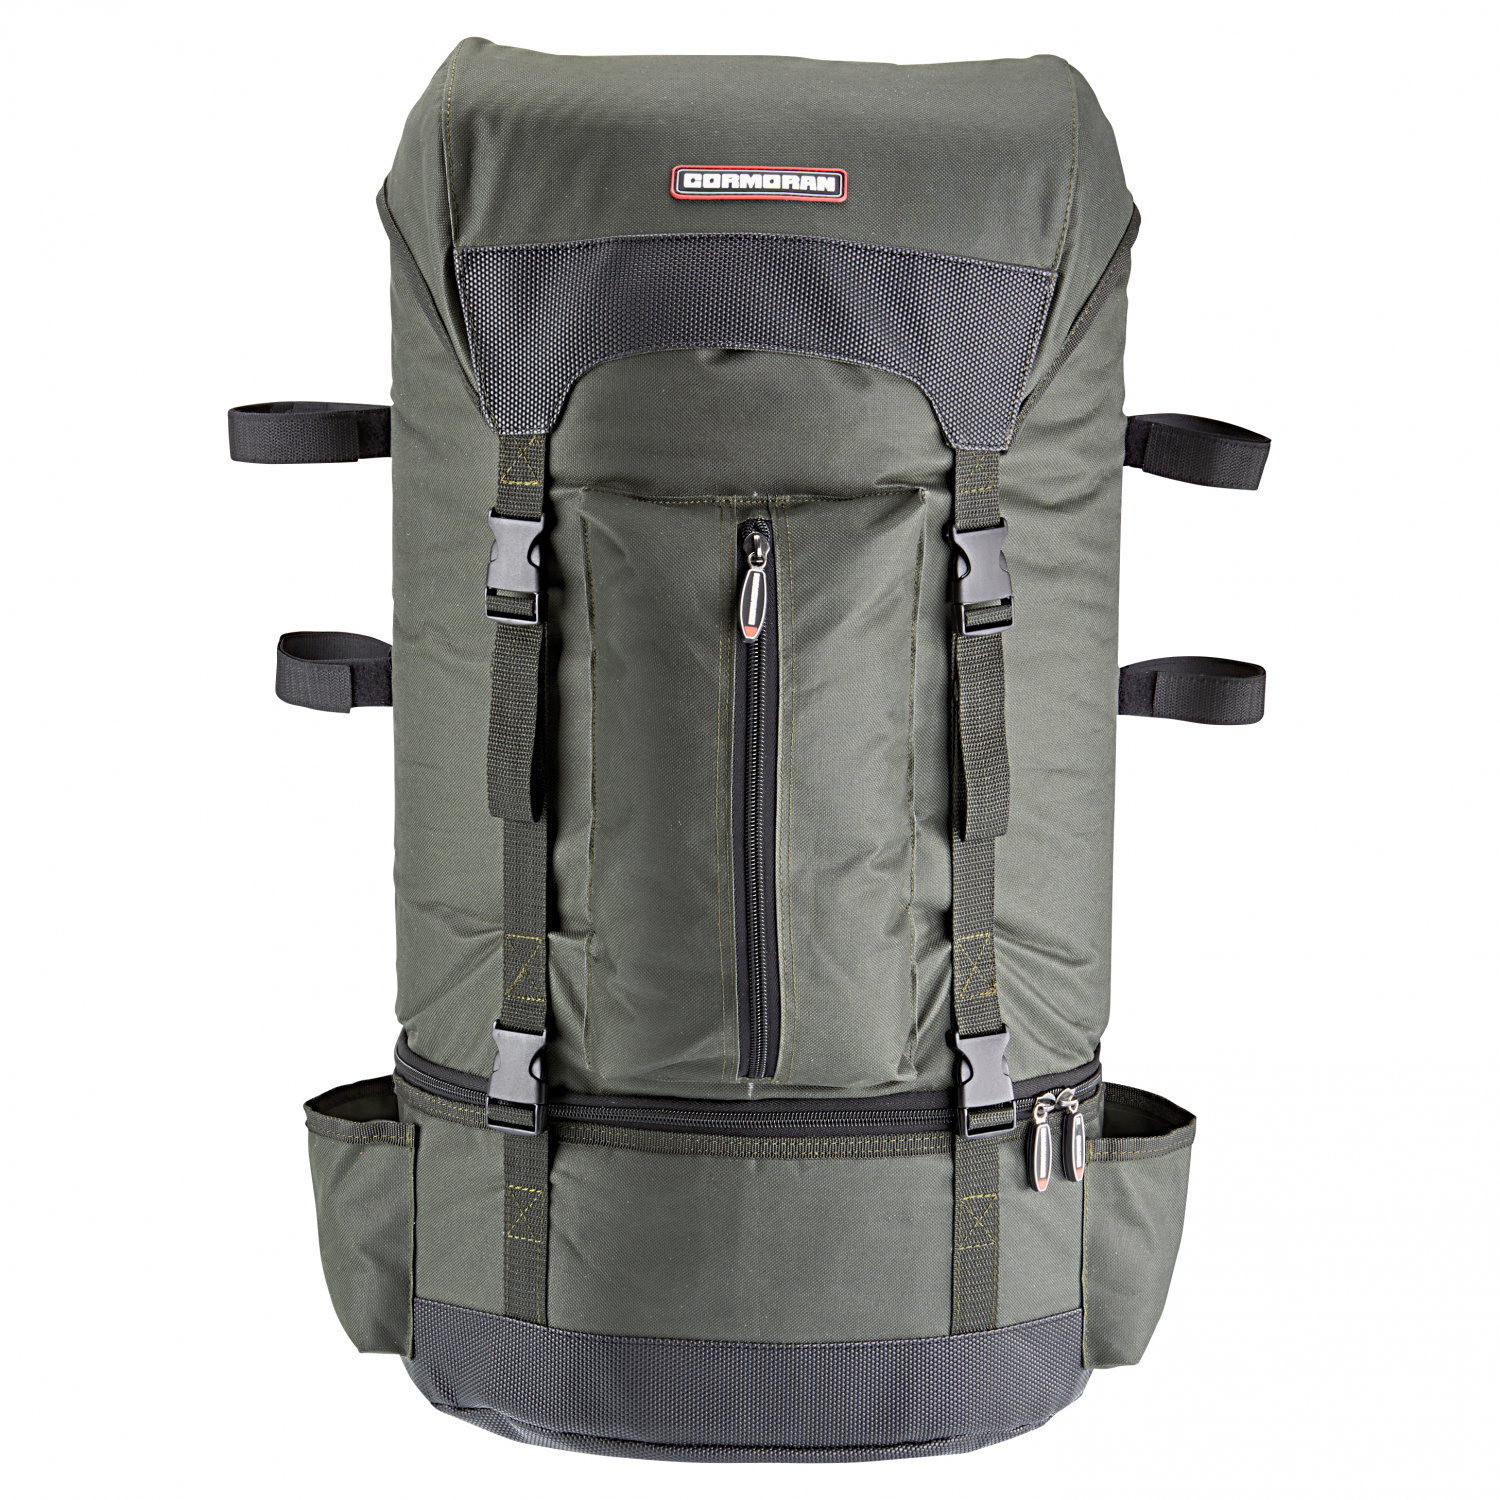 https://images.askari-sport.com/en/product/1/large/cormoran-large-backpack-model-3039.jpg